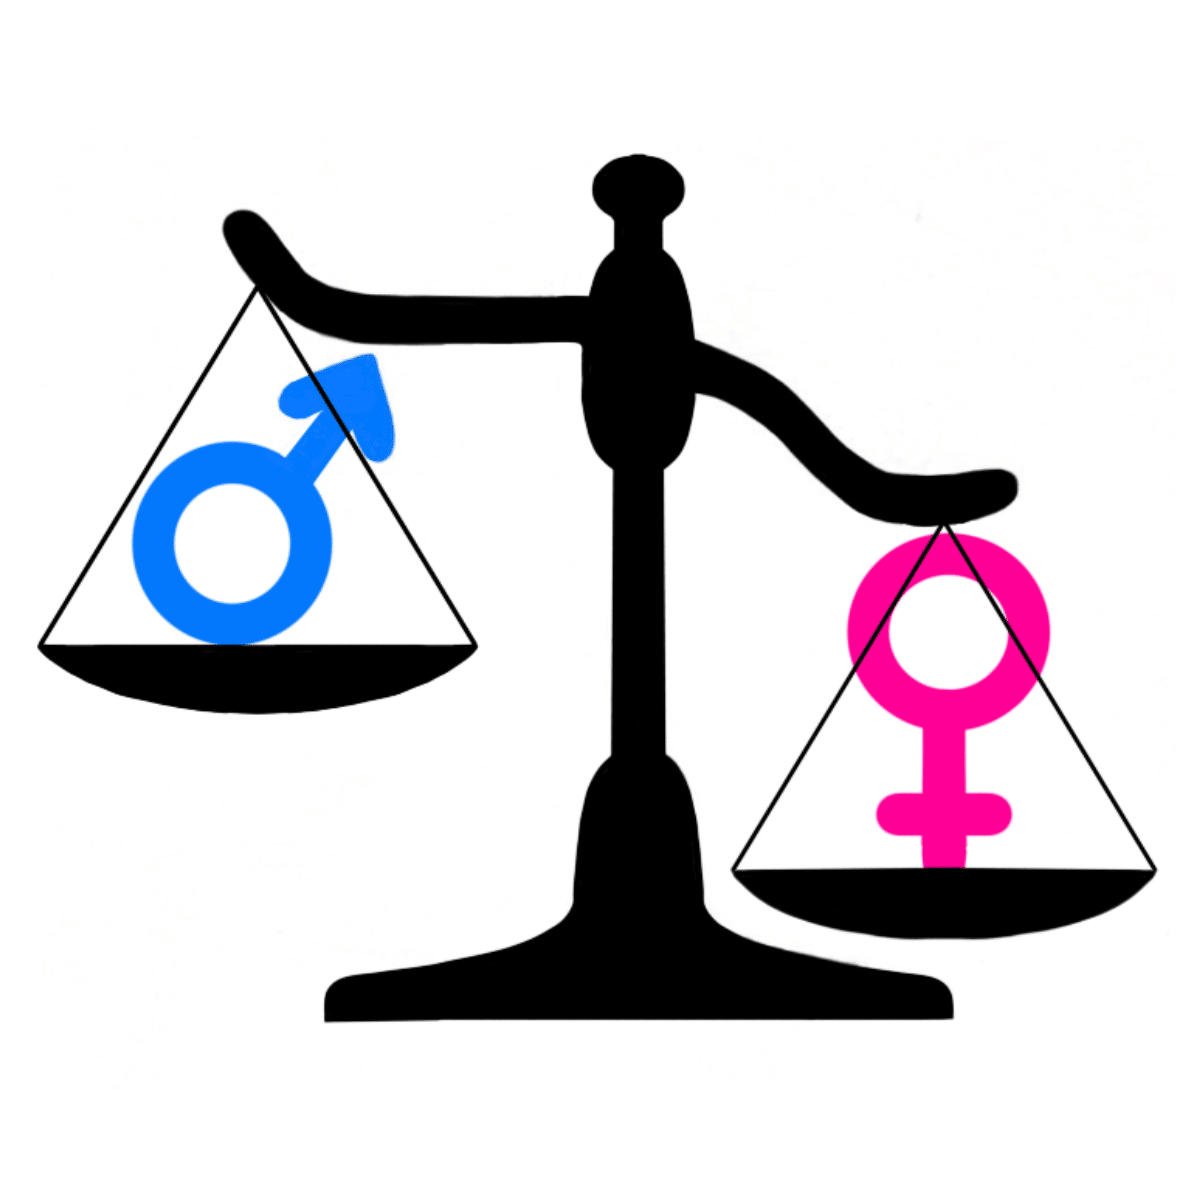 Balanza donde están los símbolos femeninos y masculinos y pesa más el femenino.